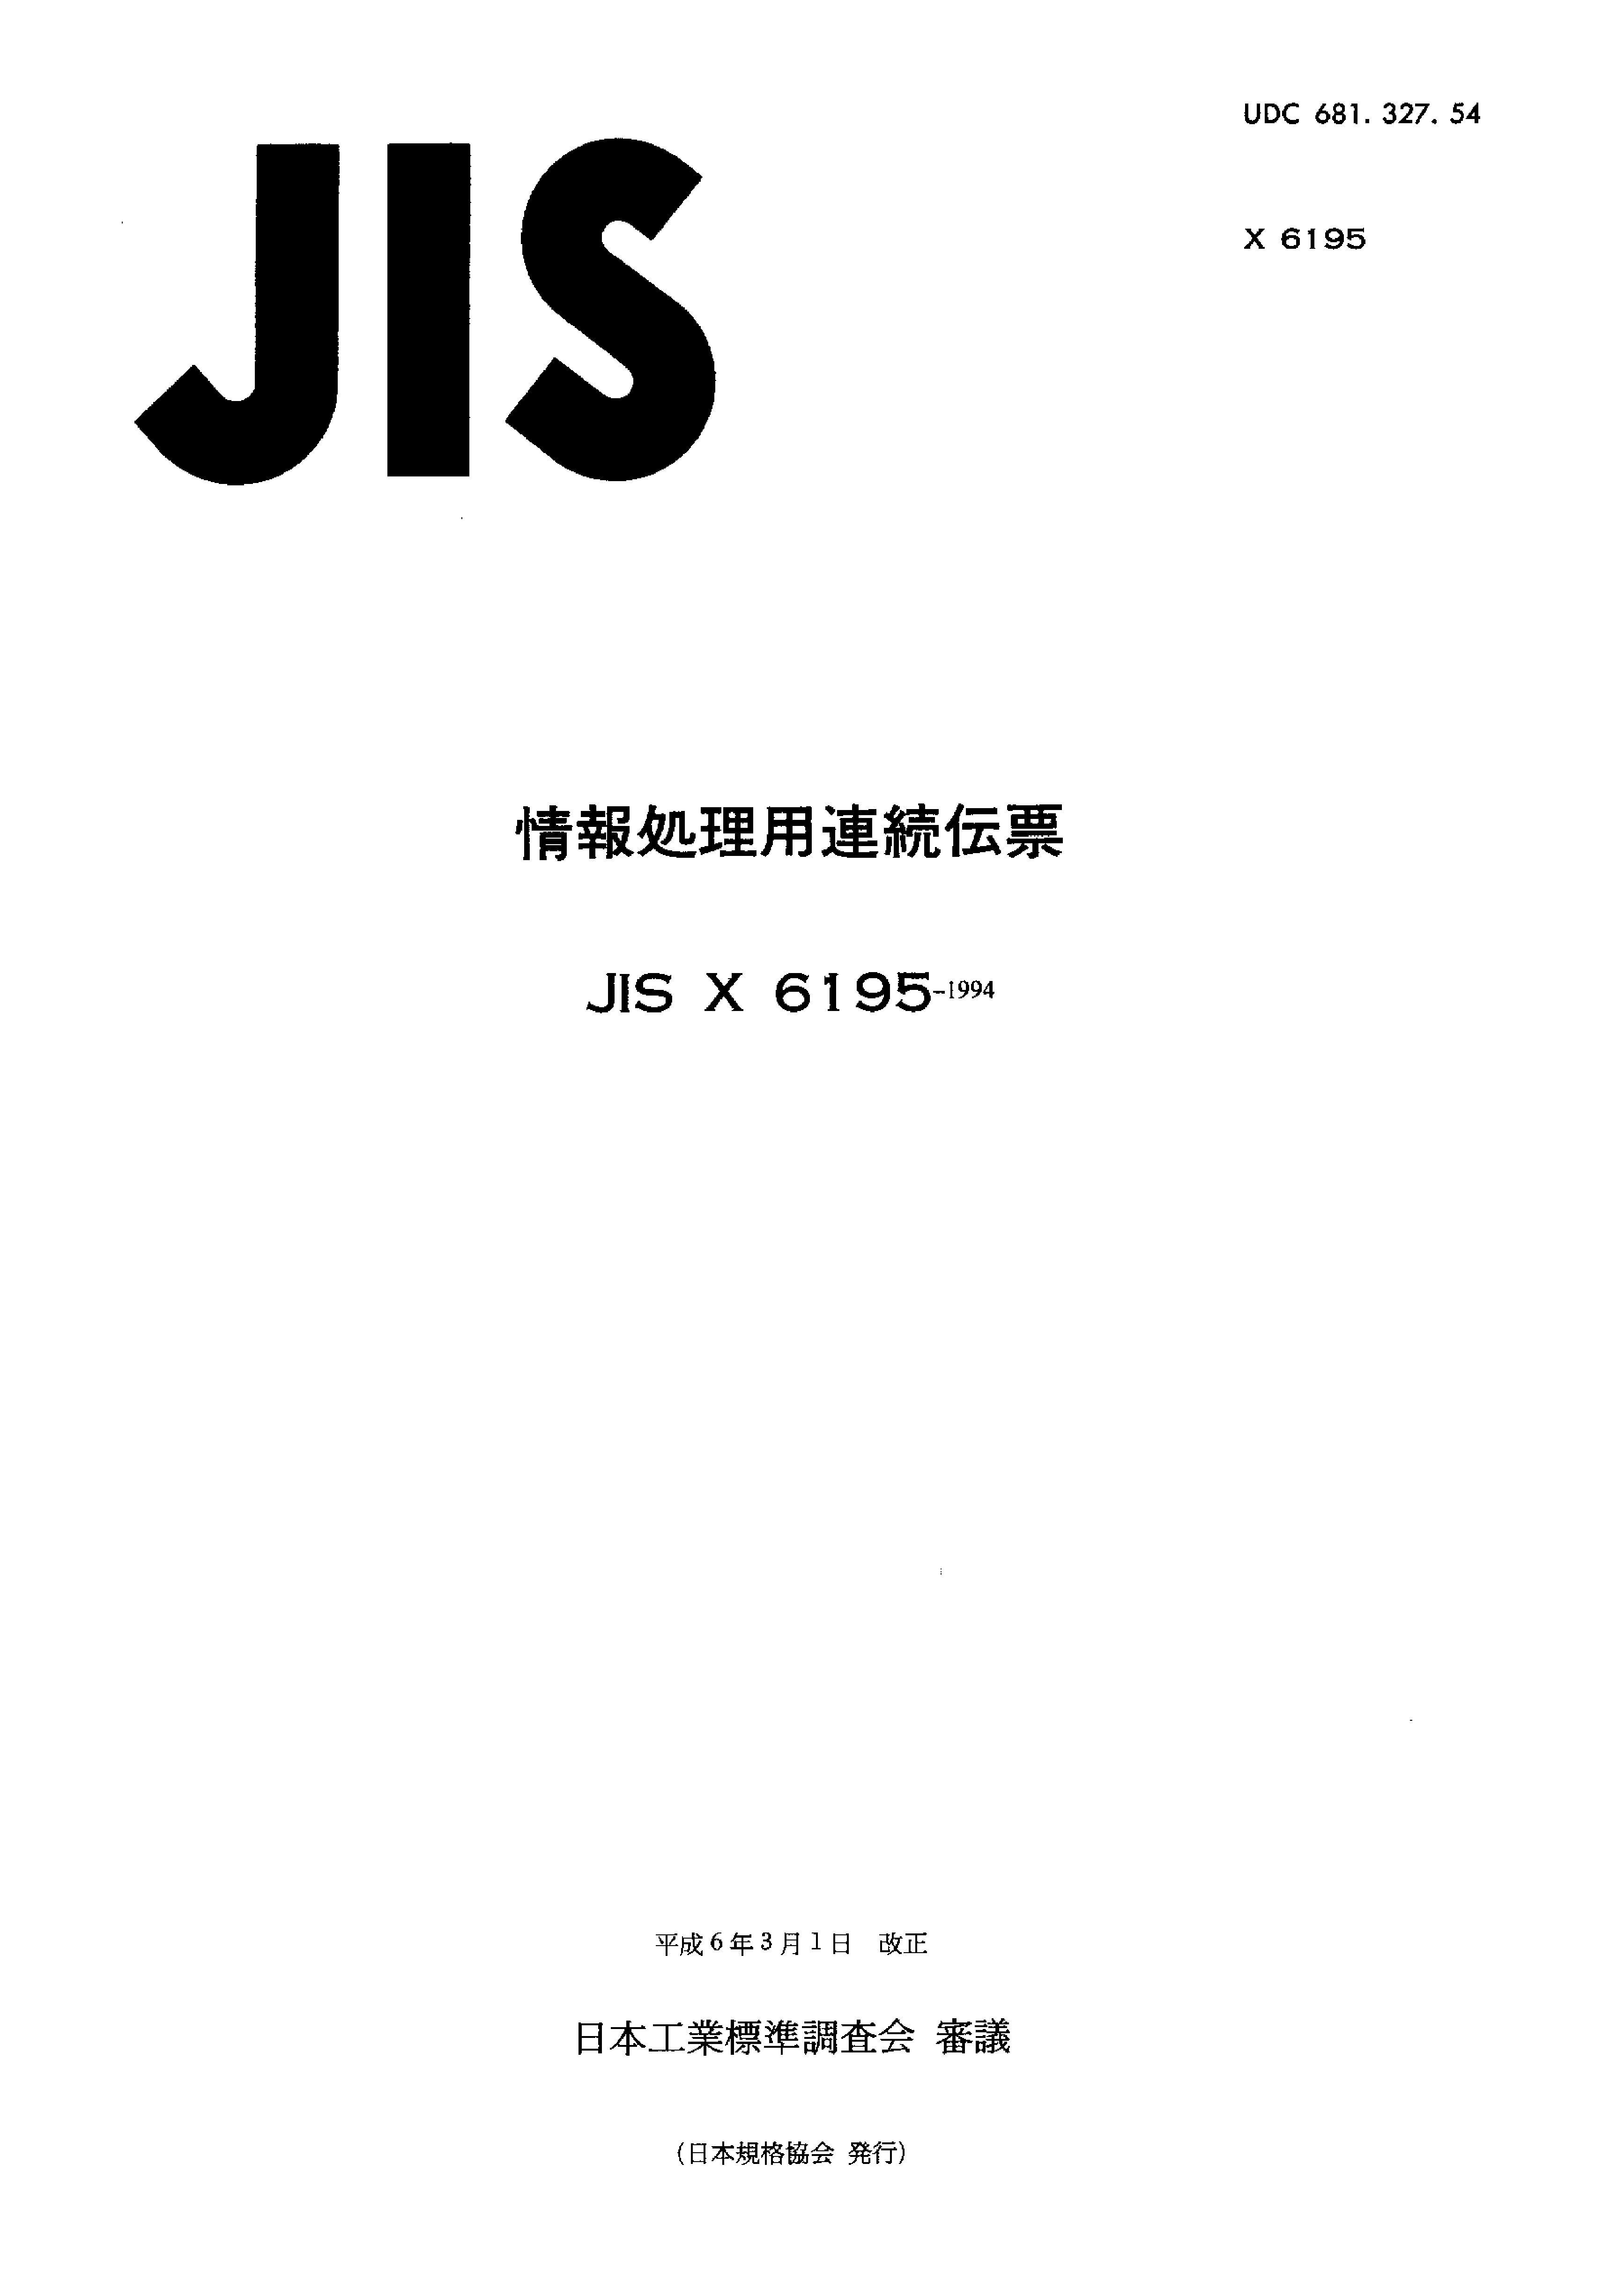 JIS X 6195:1994封面图